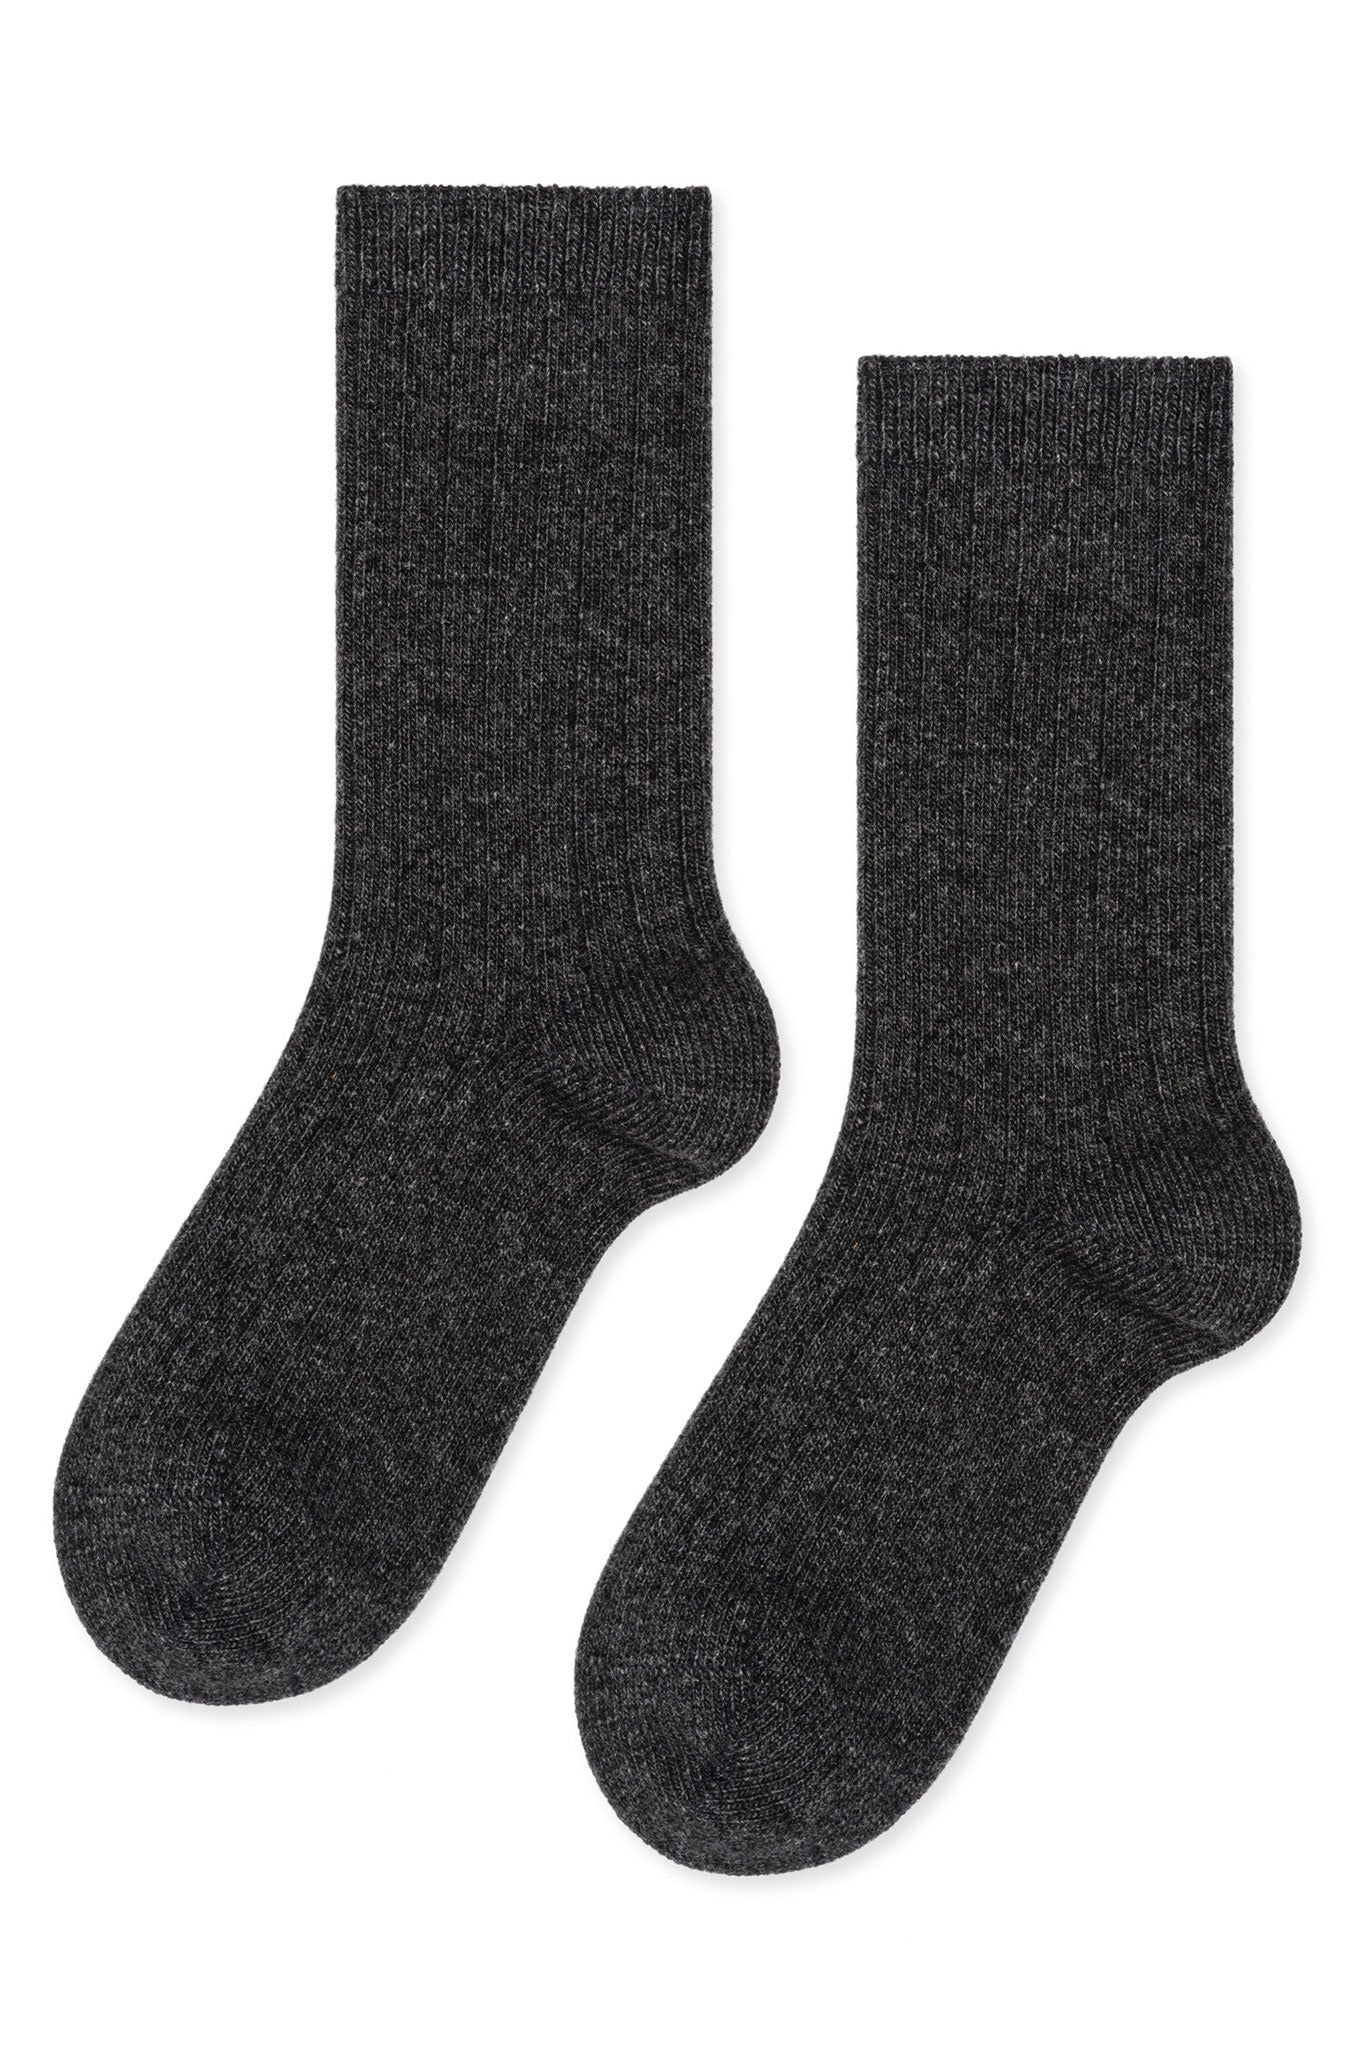 Socks – Hill's Dry Goods